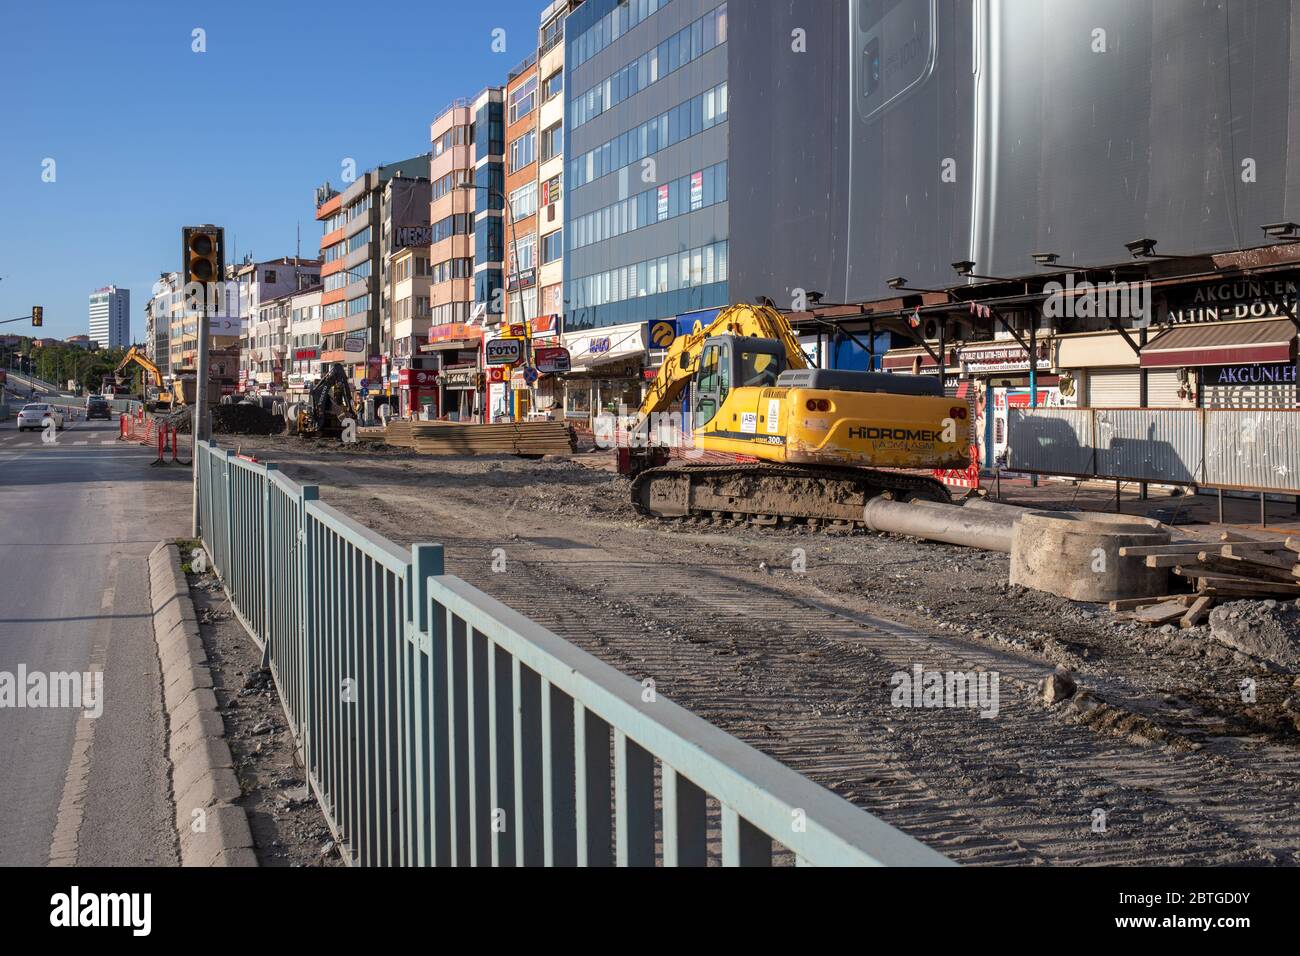 Opere infrastrutturali del comune di Kadikoy durante il coprifuoco. Kadikoy è un quartiere residenziale sulla costa asiatica di Istanbul. Foto Stock